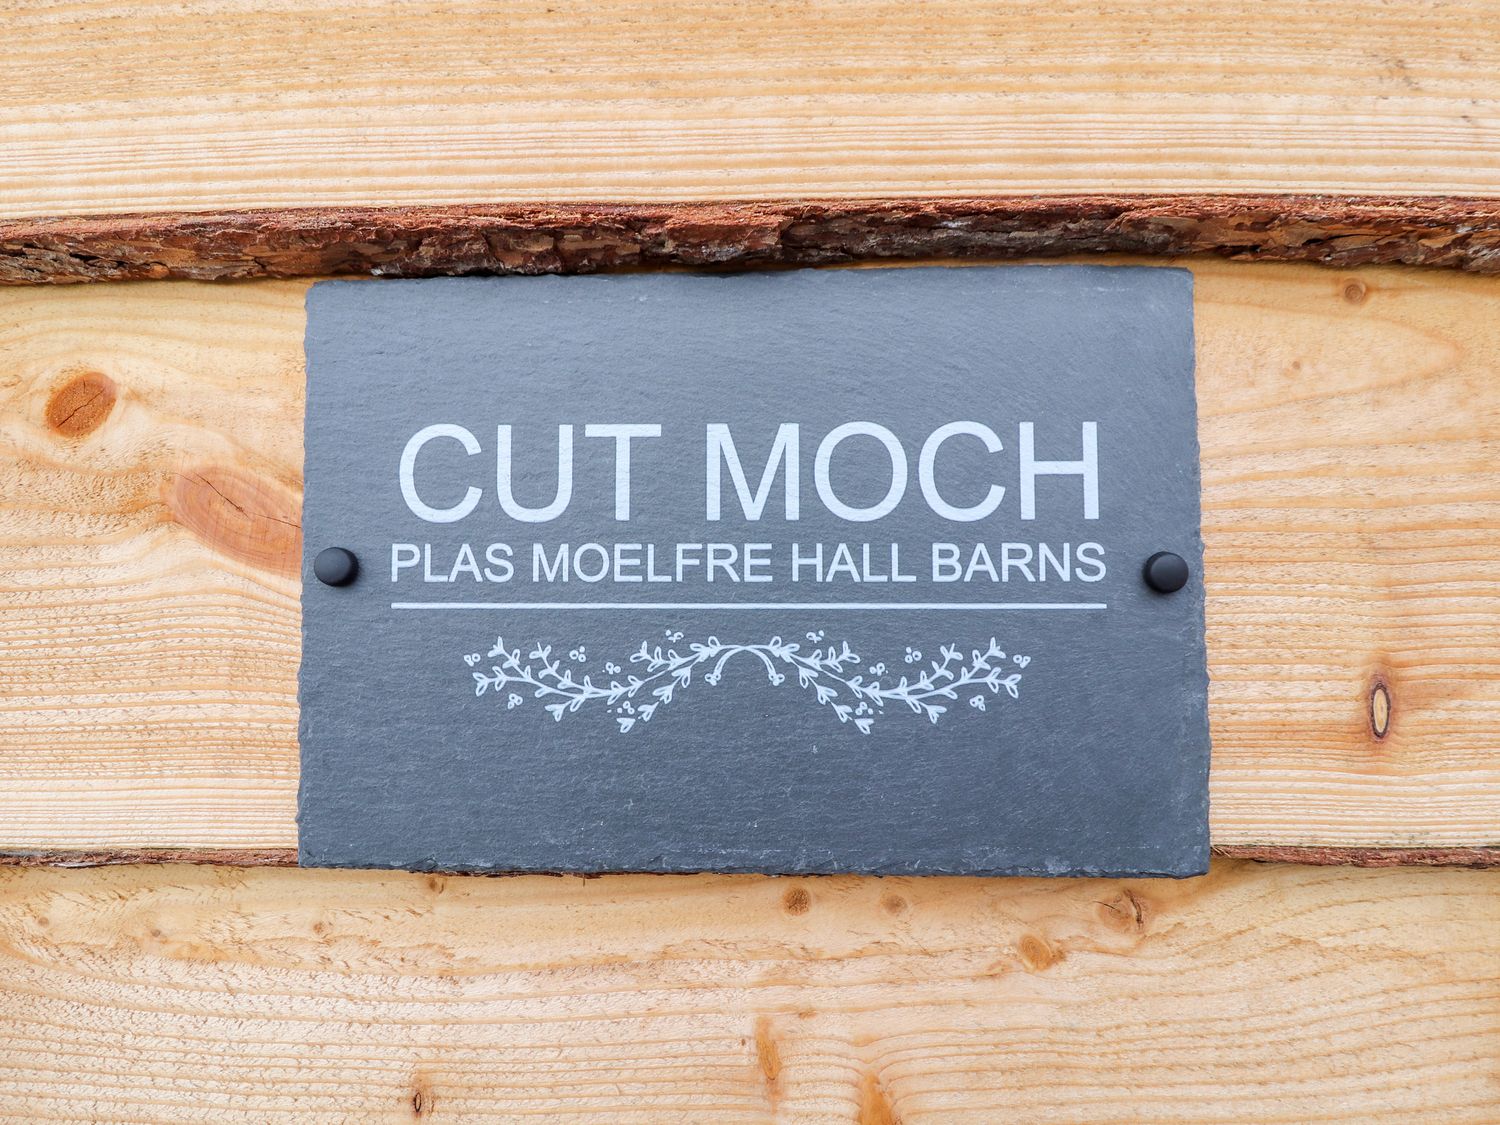 Cut Moch, Plas Moelfre Hall Barns, Llanrhaeadr-Ym-Mochnant